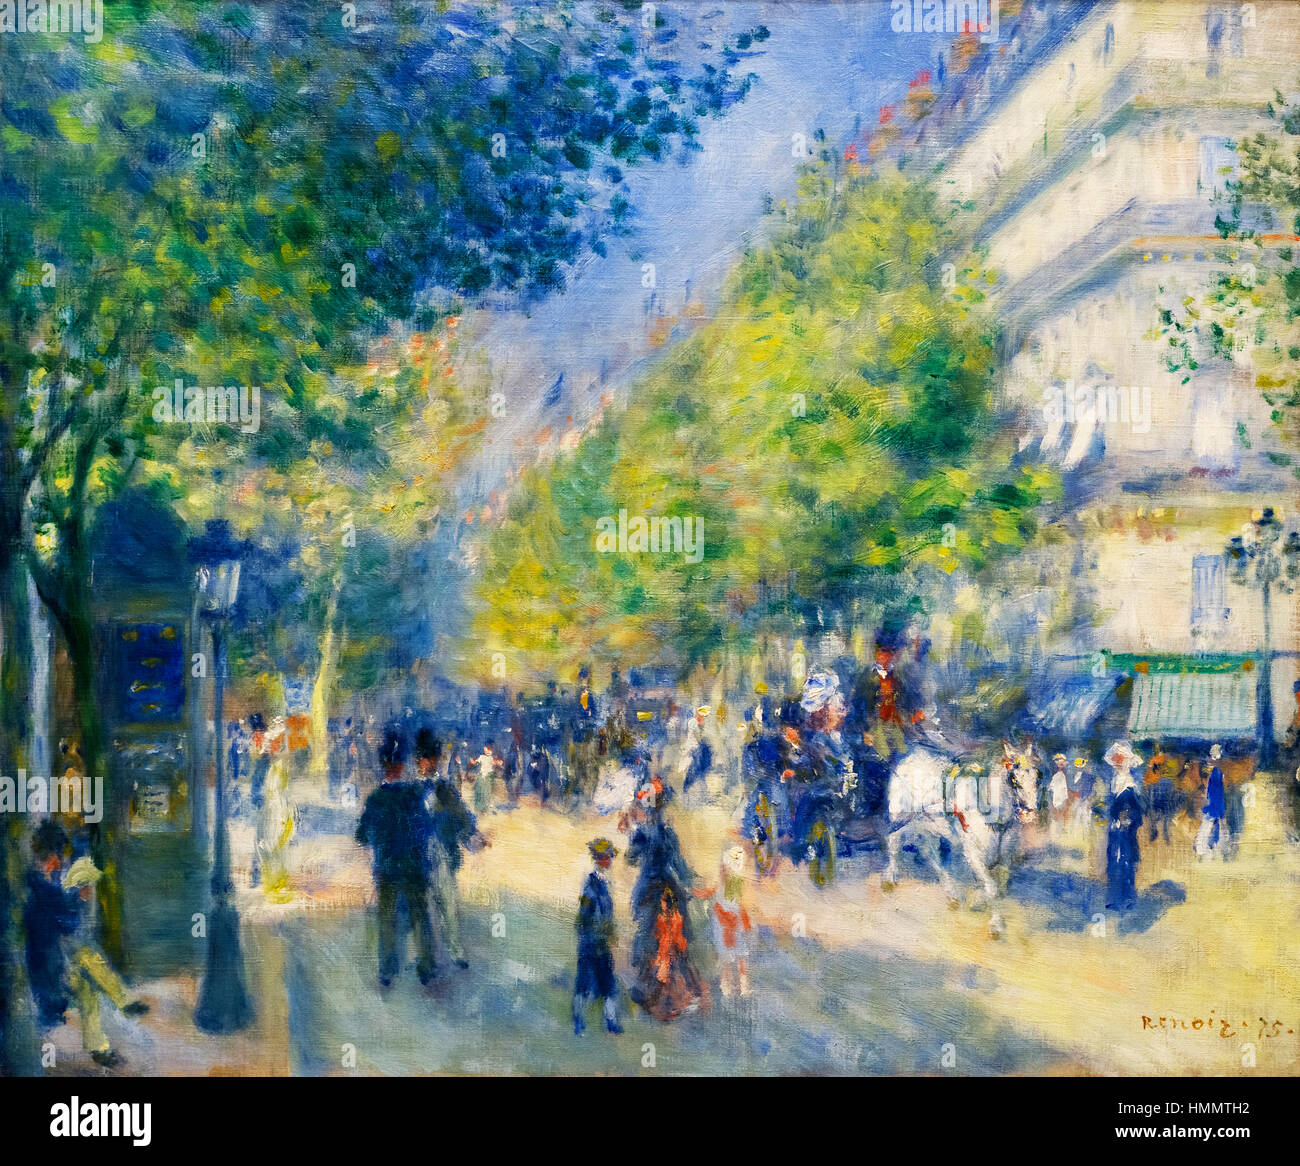 Renoir painting. Les Grands Boulevards by Pierre-Auguste Renoir, oil on canvas, 1875 Stock Photo